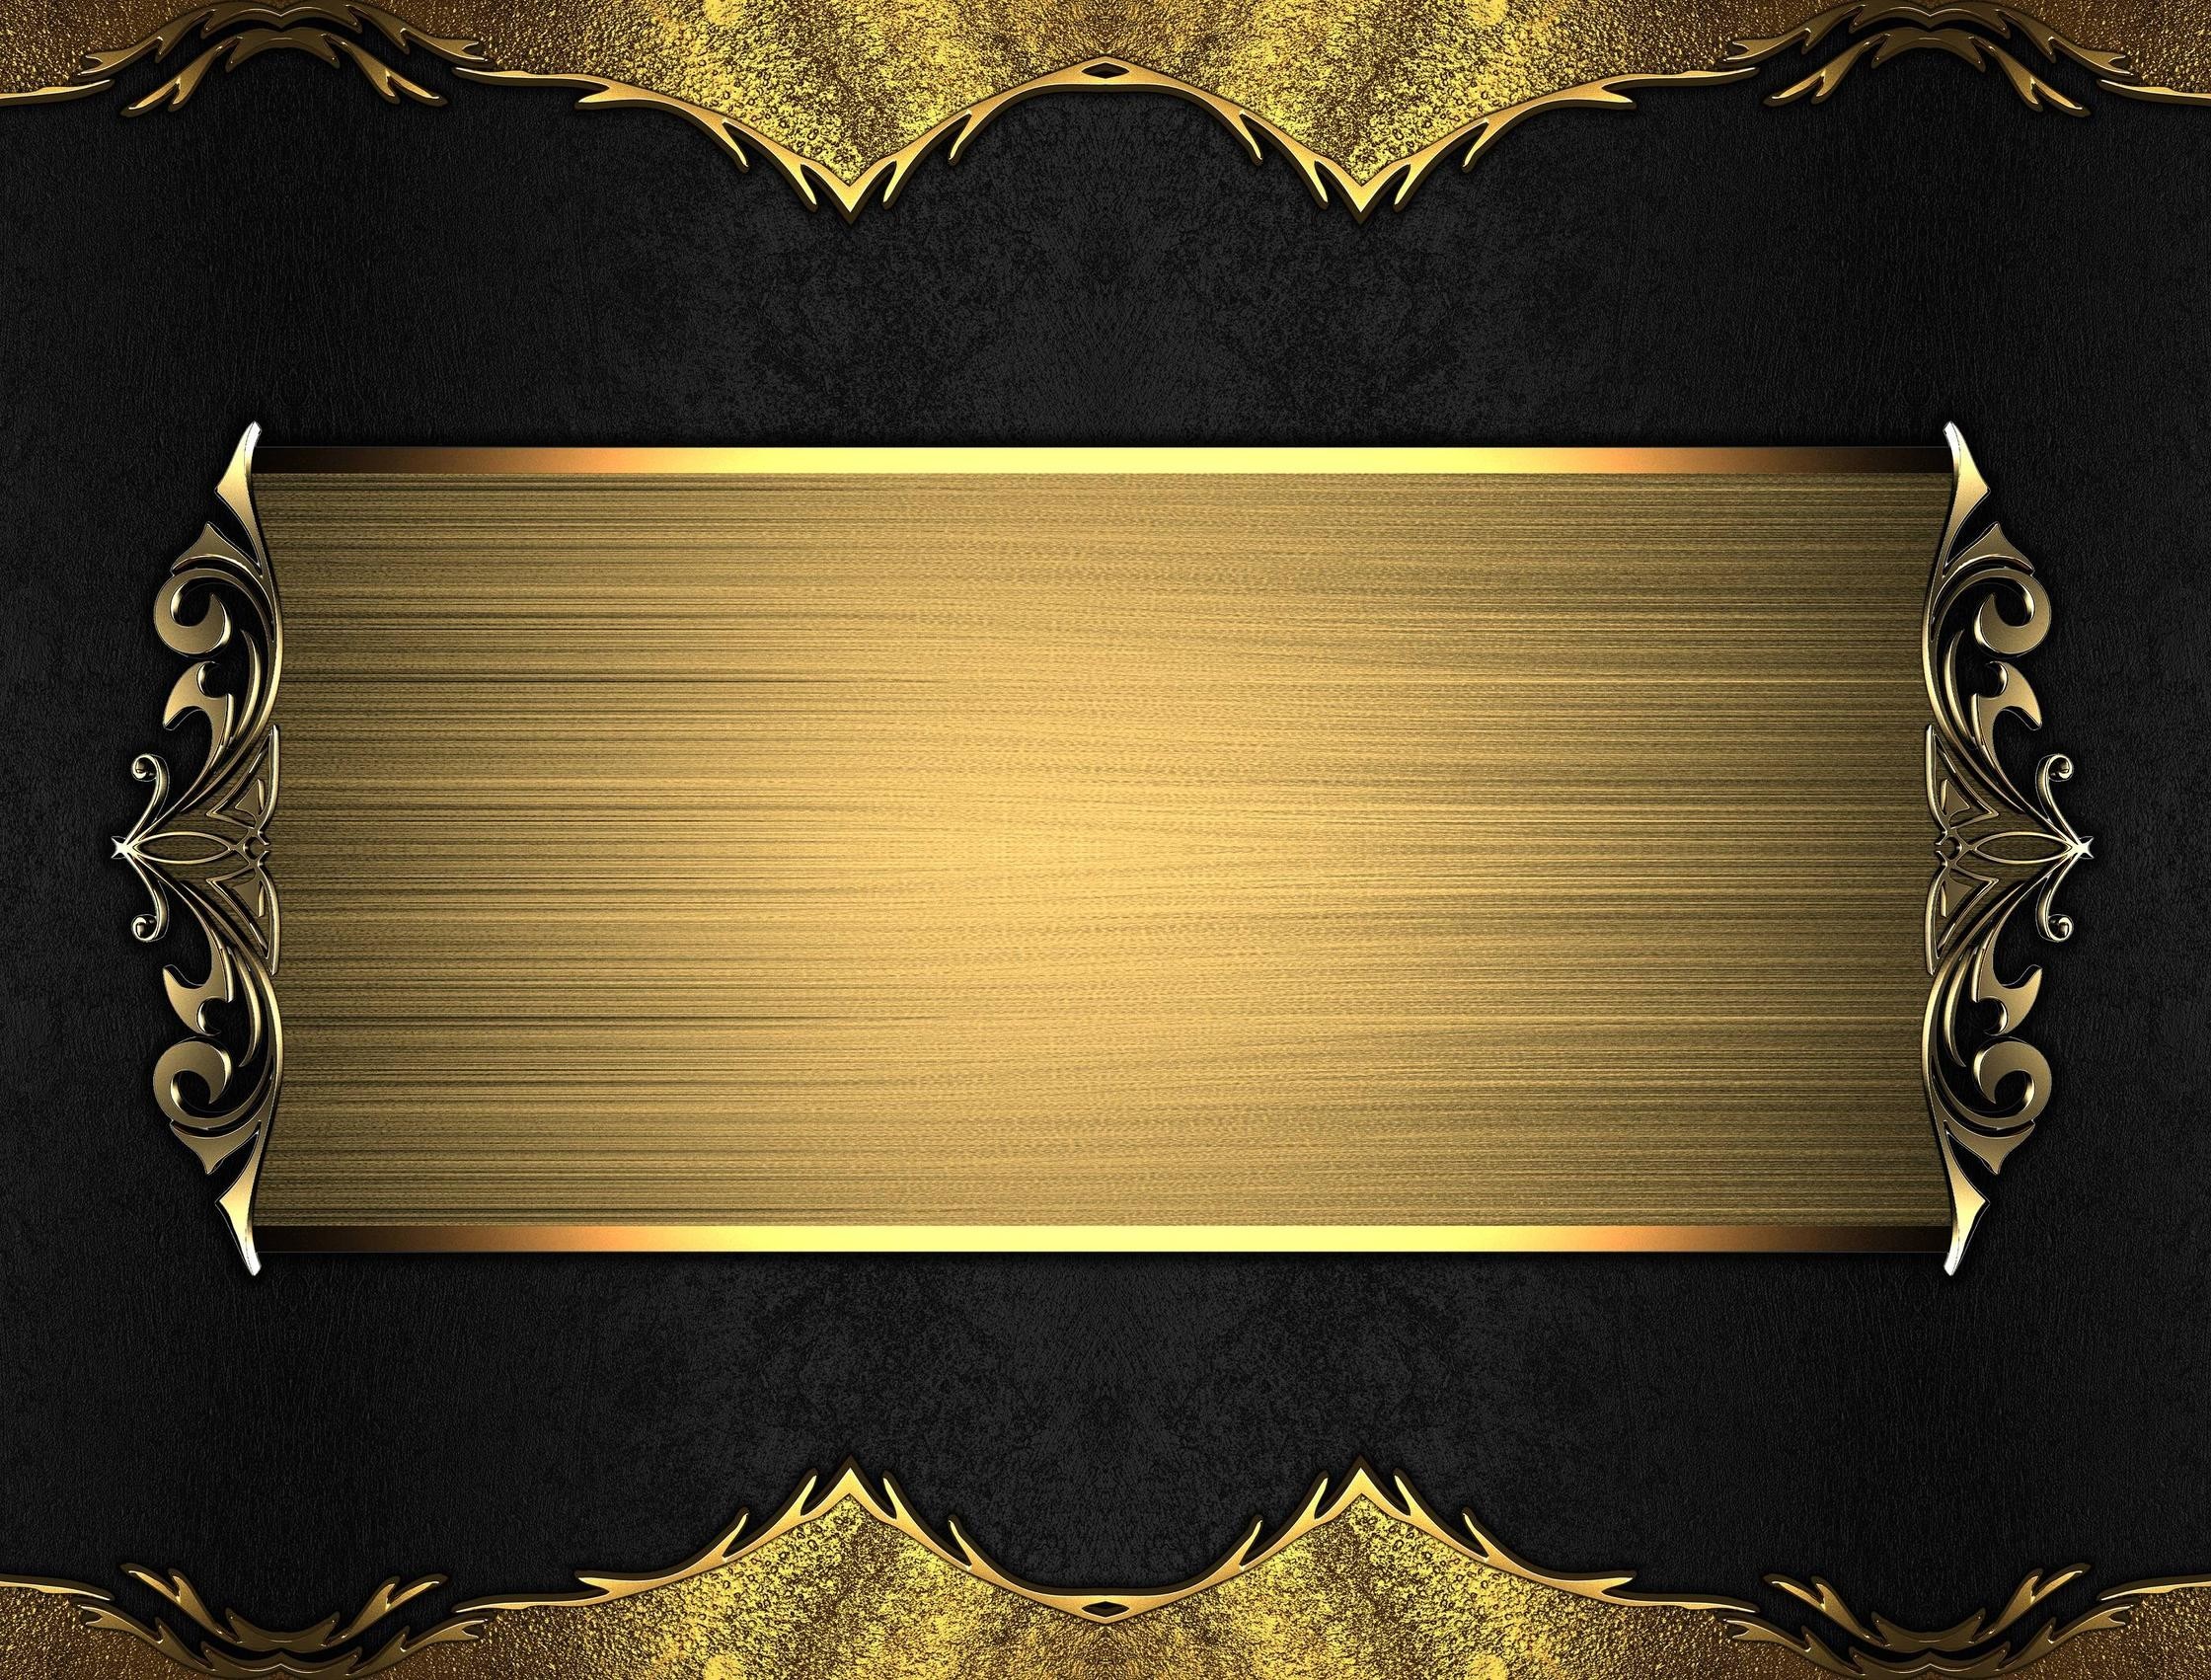 2240x1702  pazUJFh.jpg (2240Ã—1702). Download. Black and Gold Background Â·  1920x1080 Black and Gold Background